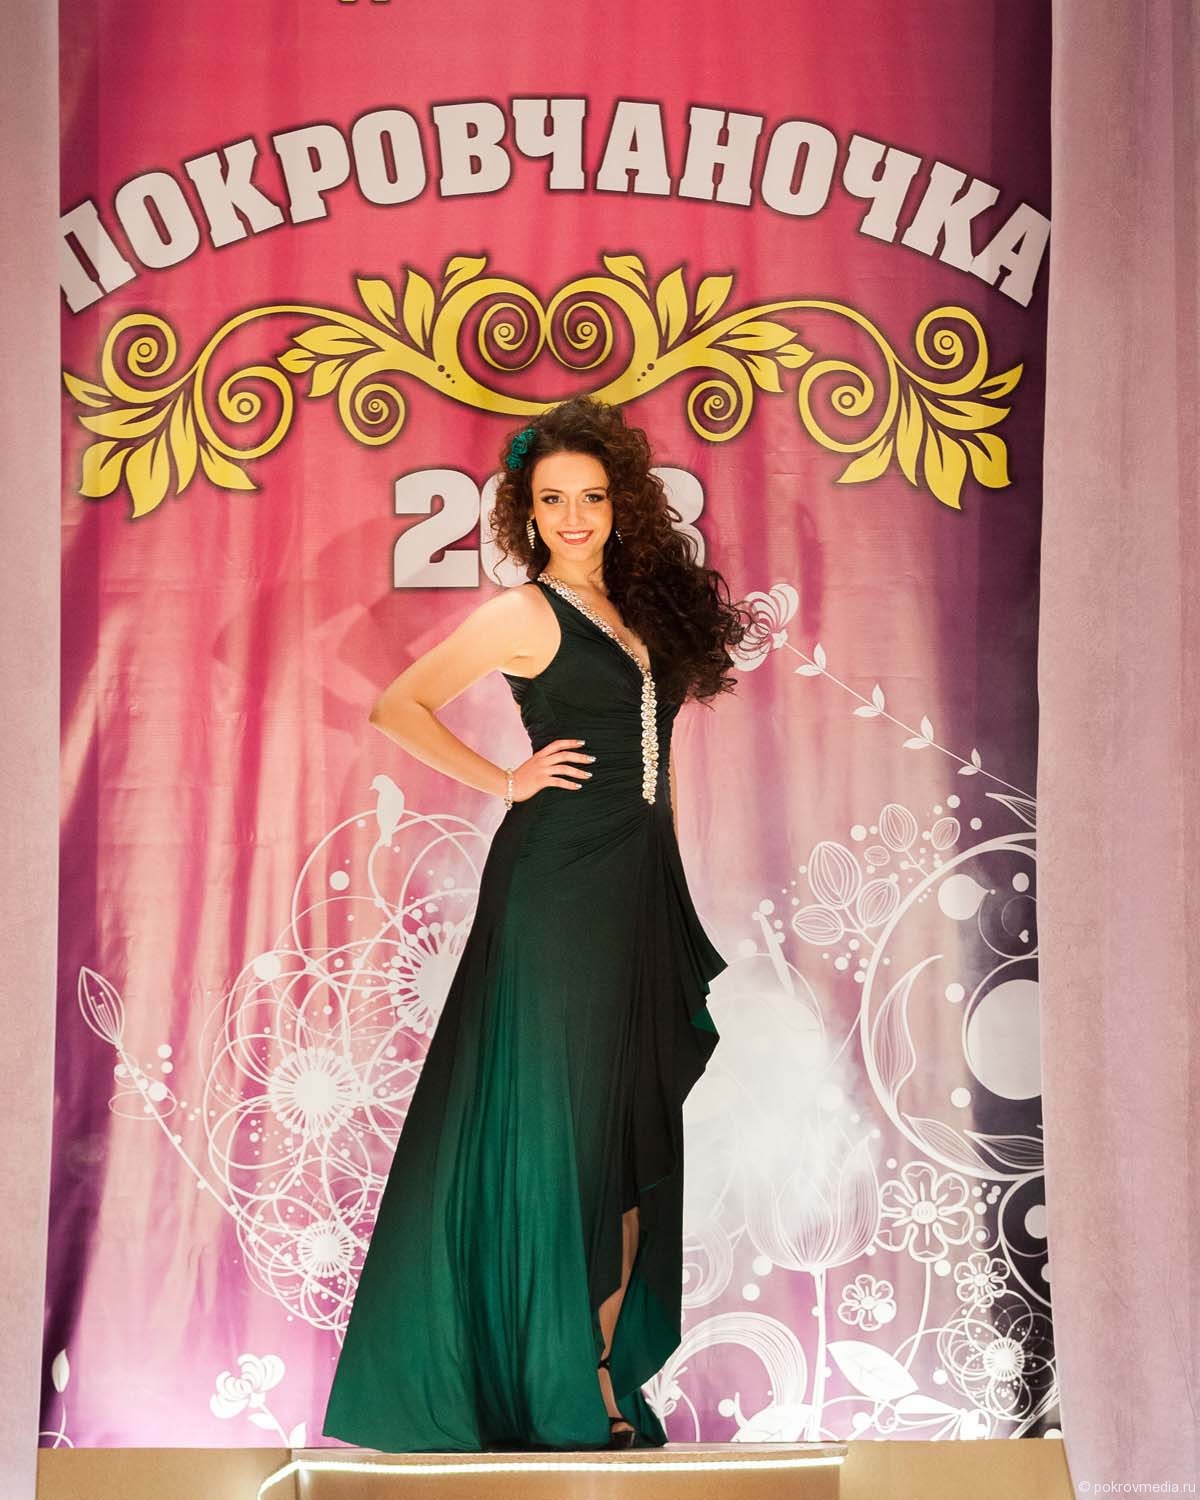 Виктория Юковская - победительница конкурса «Покровчаночка 2013»